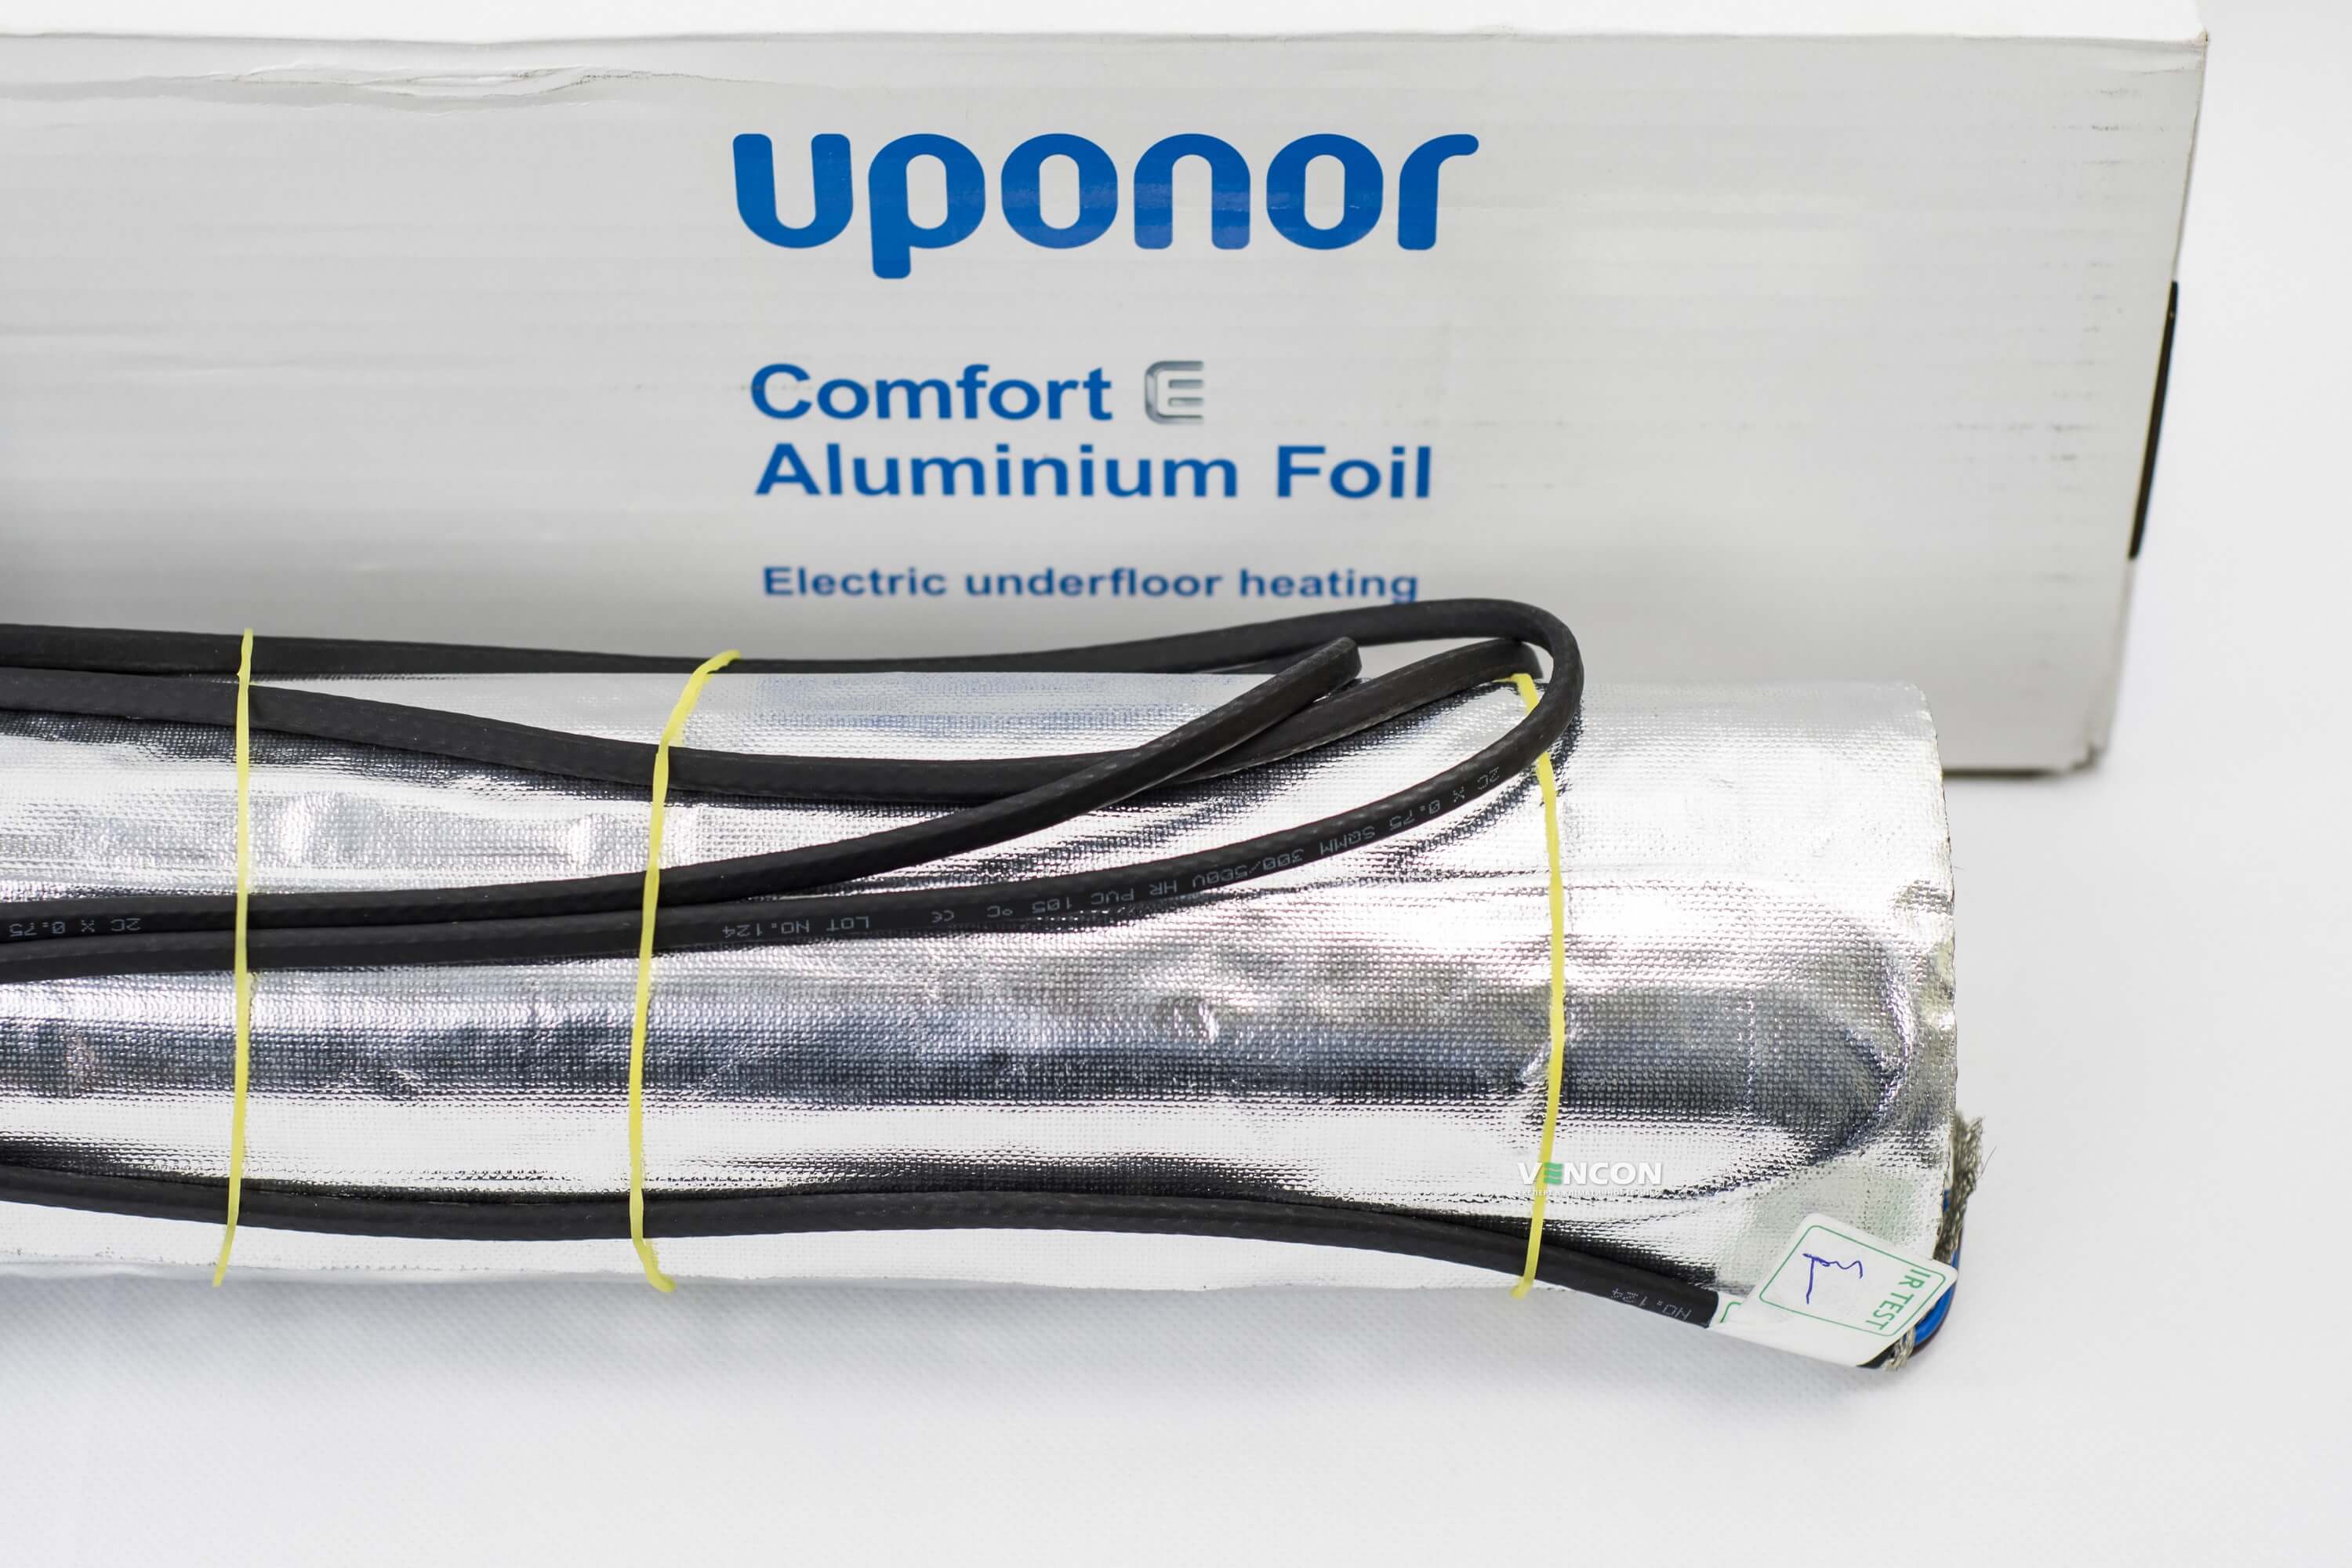 Электрический теплый пол Uponor Aluminium Foil 140-2 отзывы - изображения 5